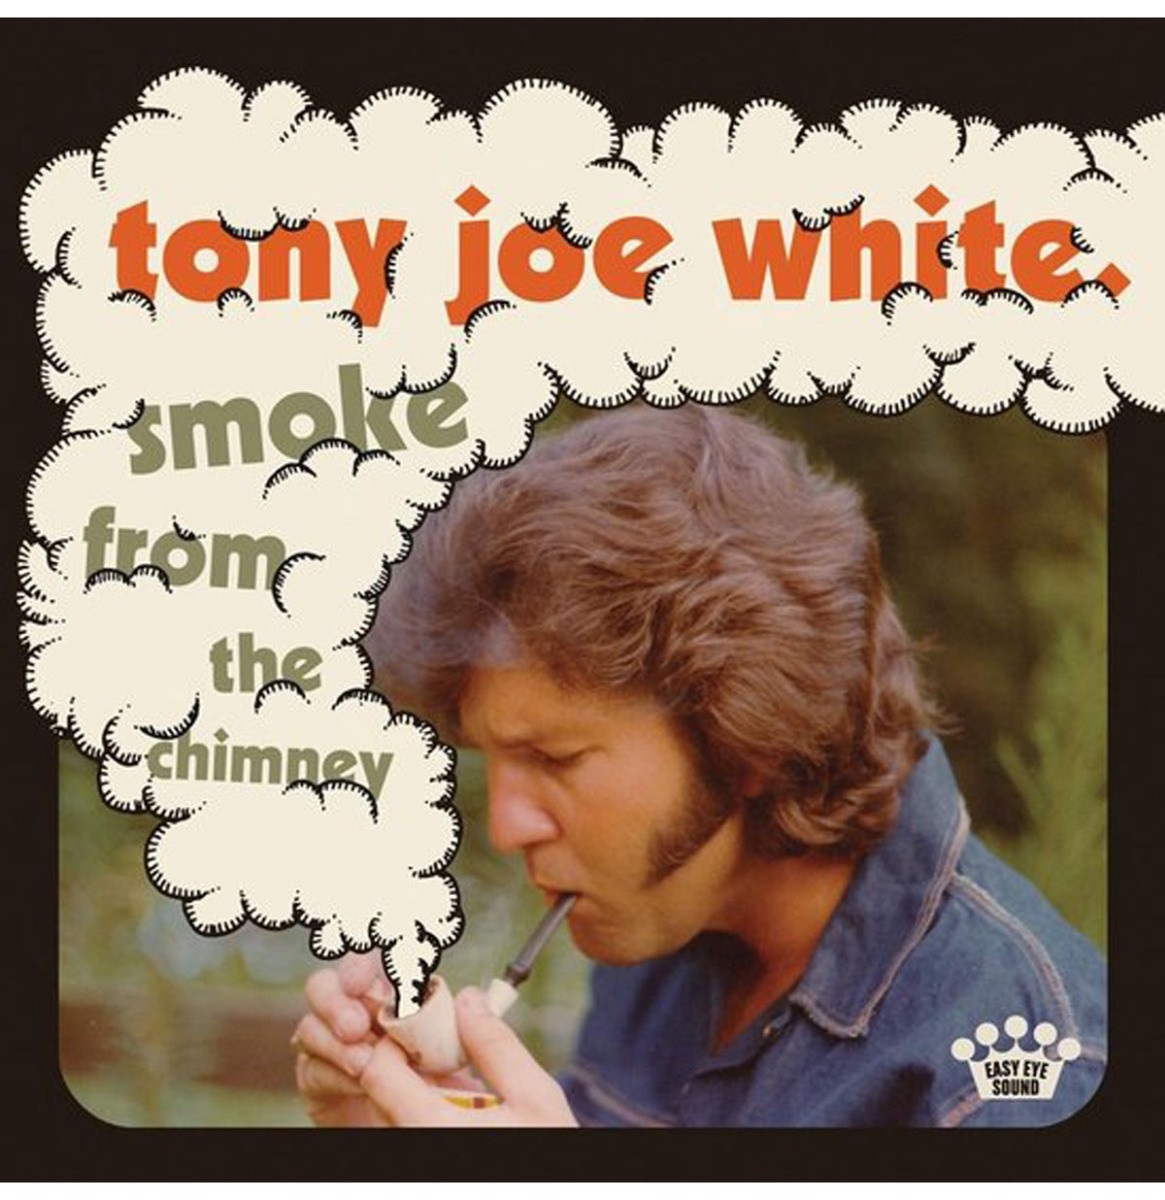 Tony Joe White - Smoke From The Chimney LP